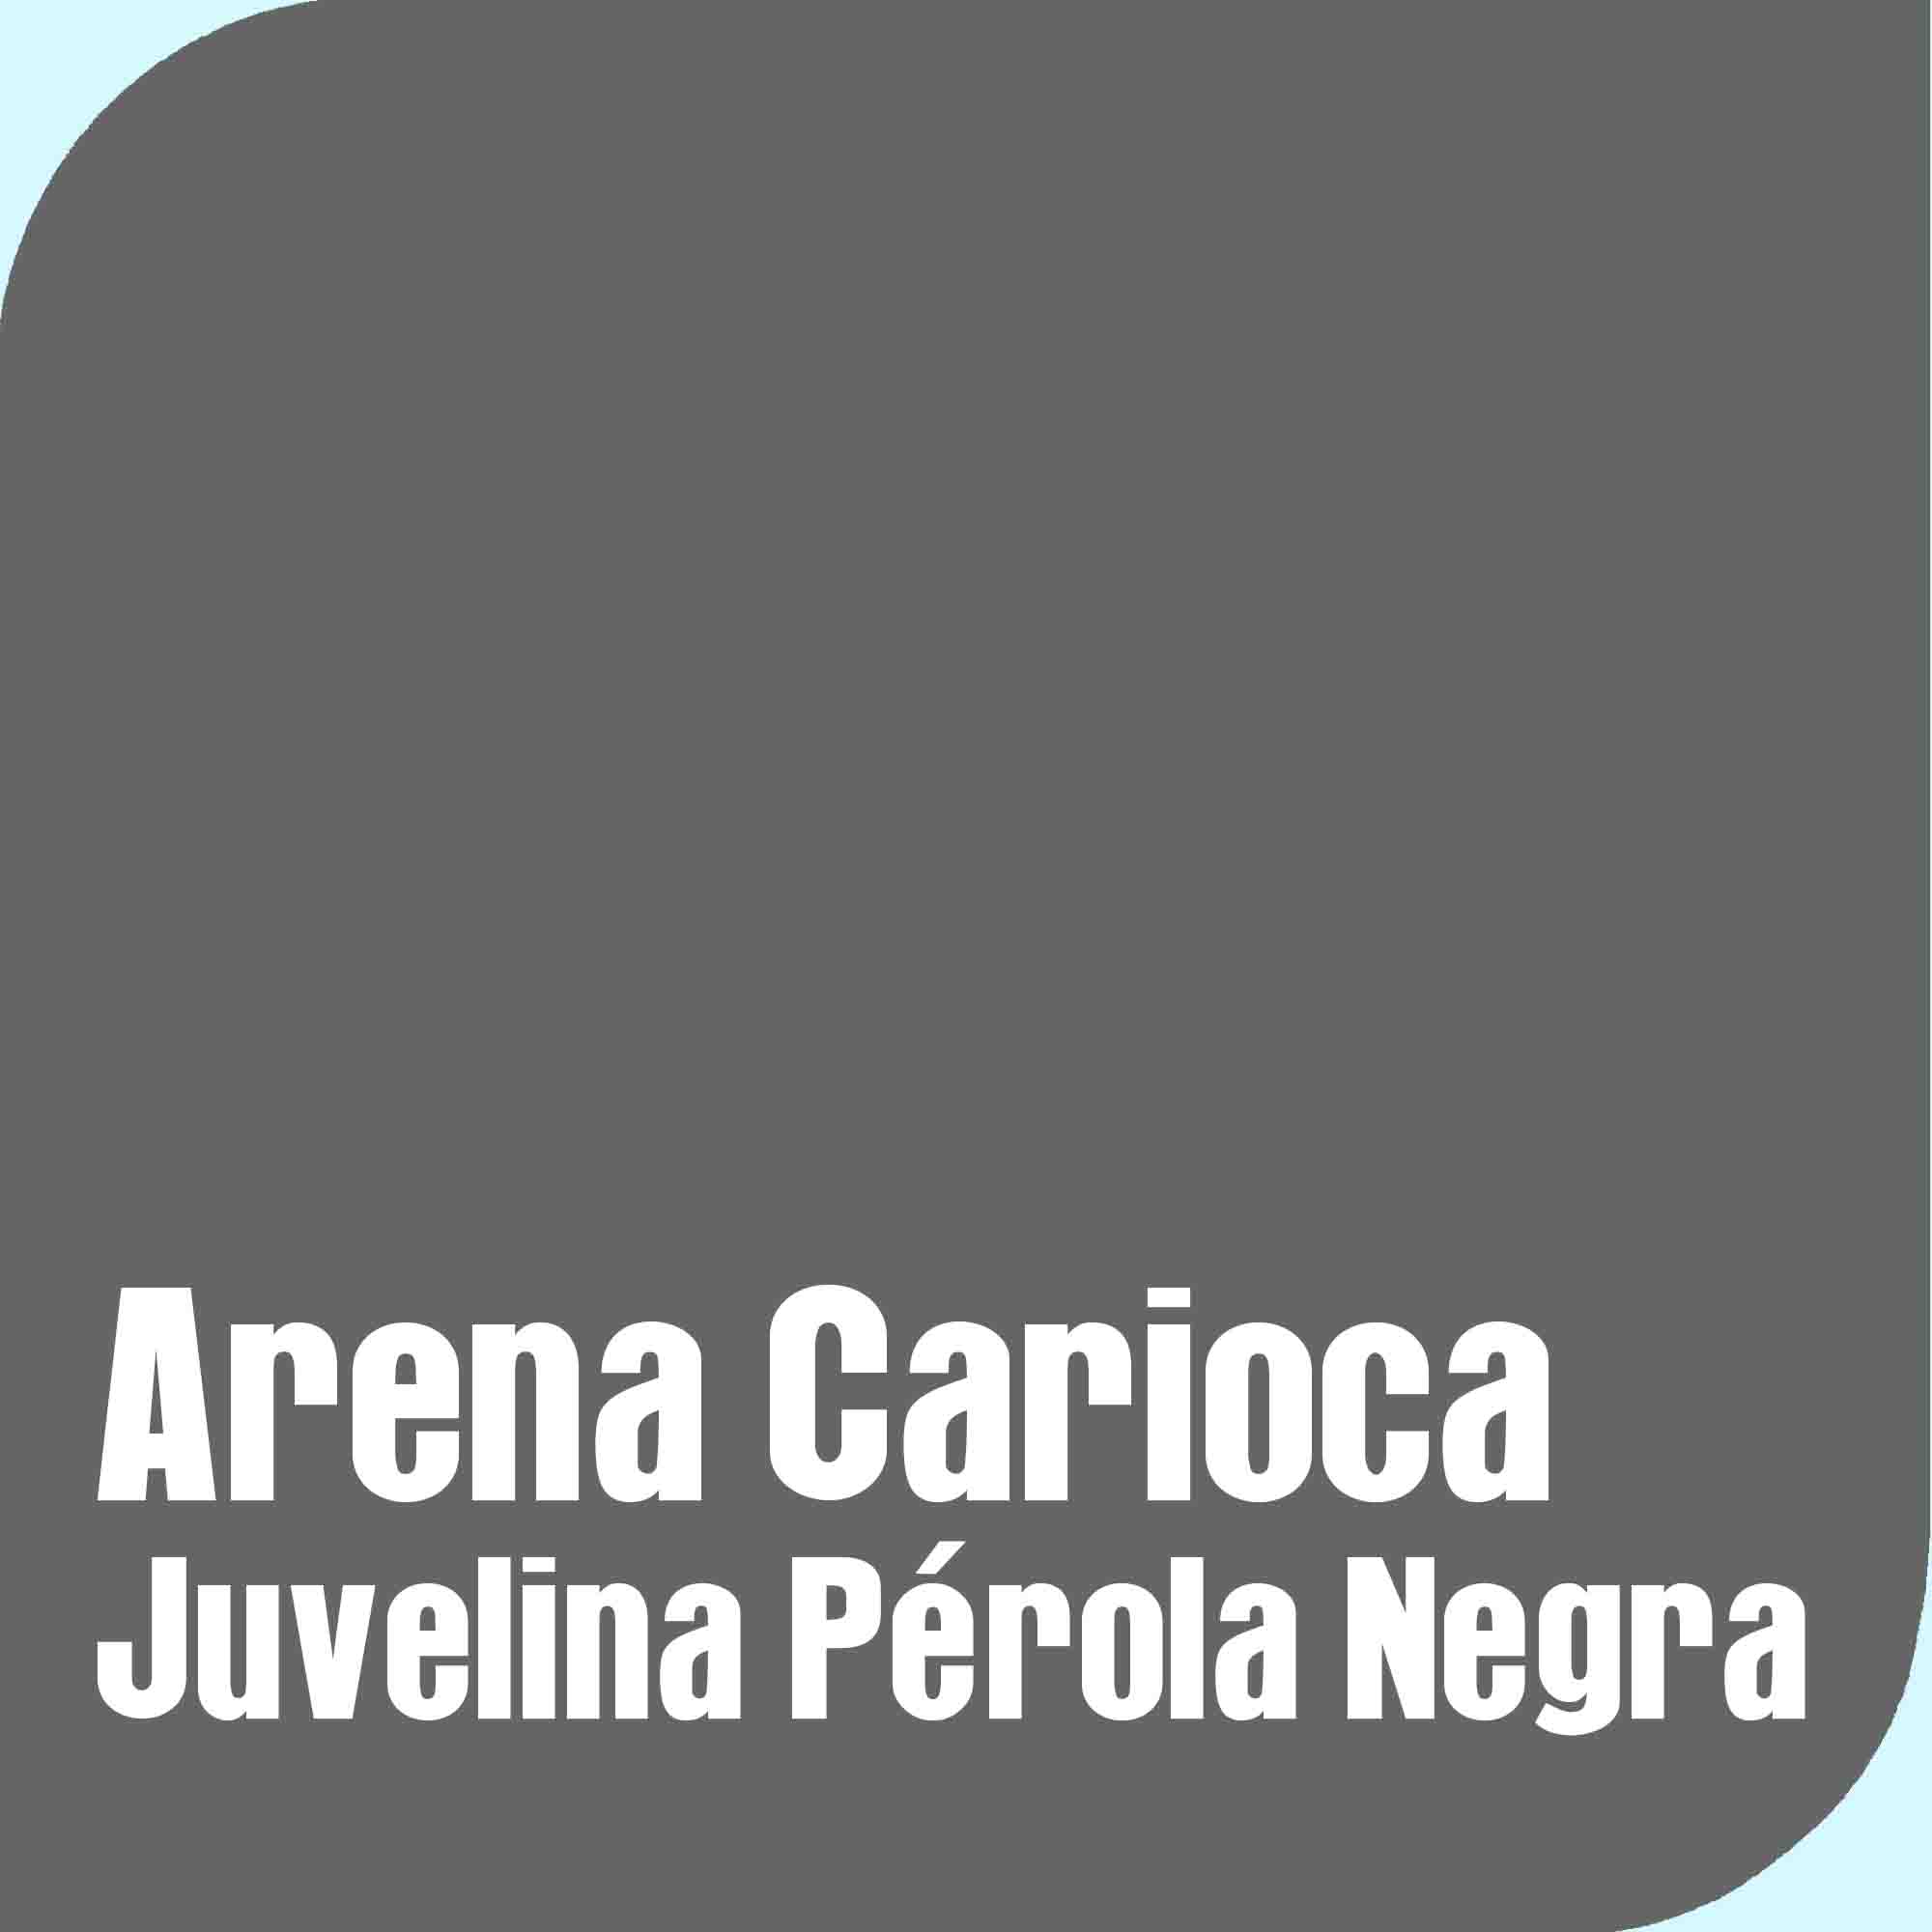 Arena Carioca Jovelina Pérola Negra